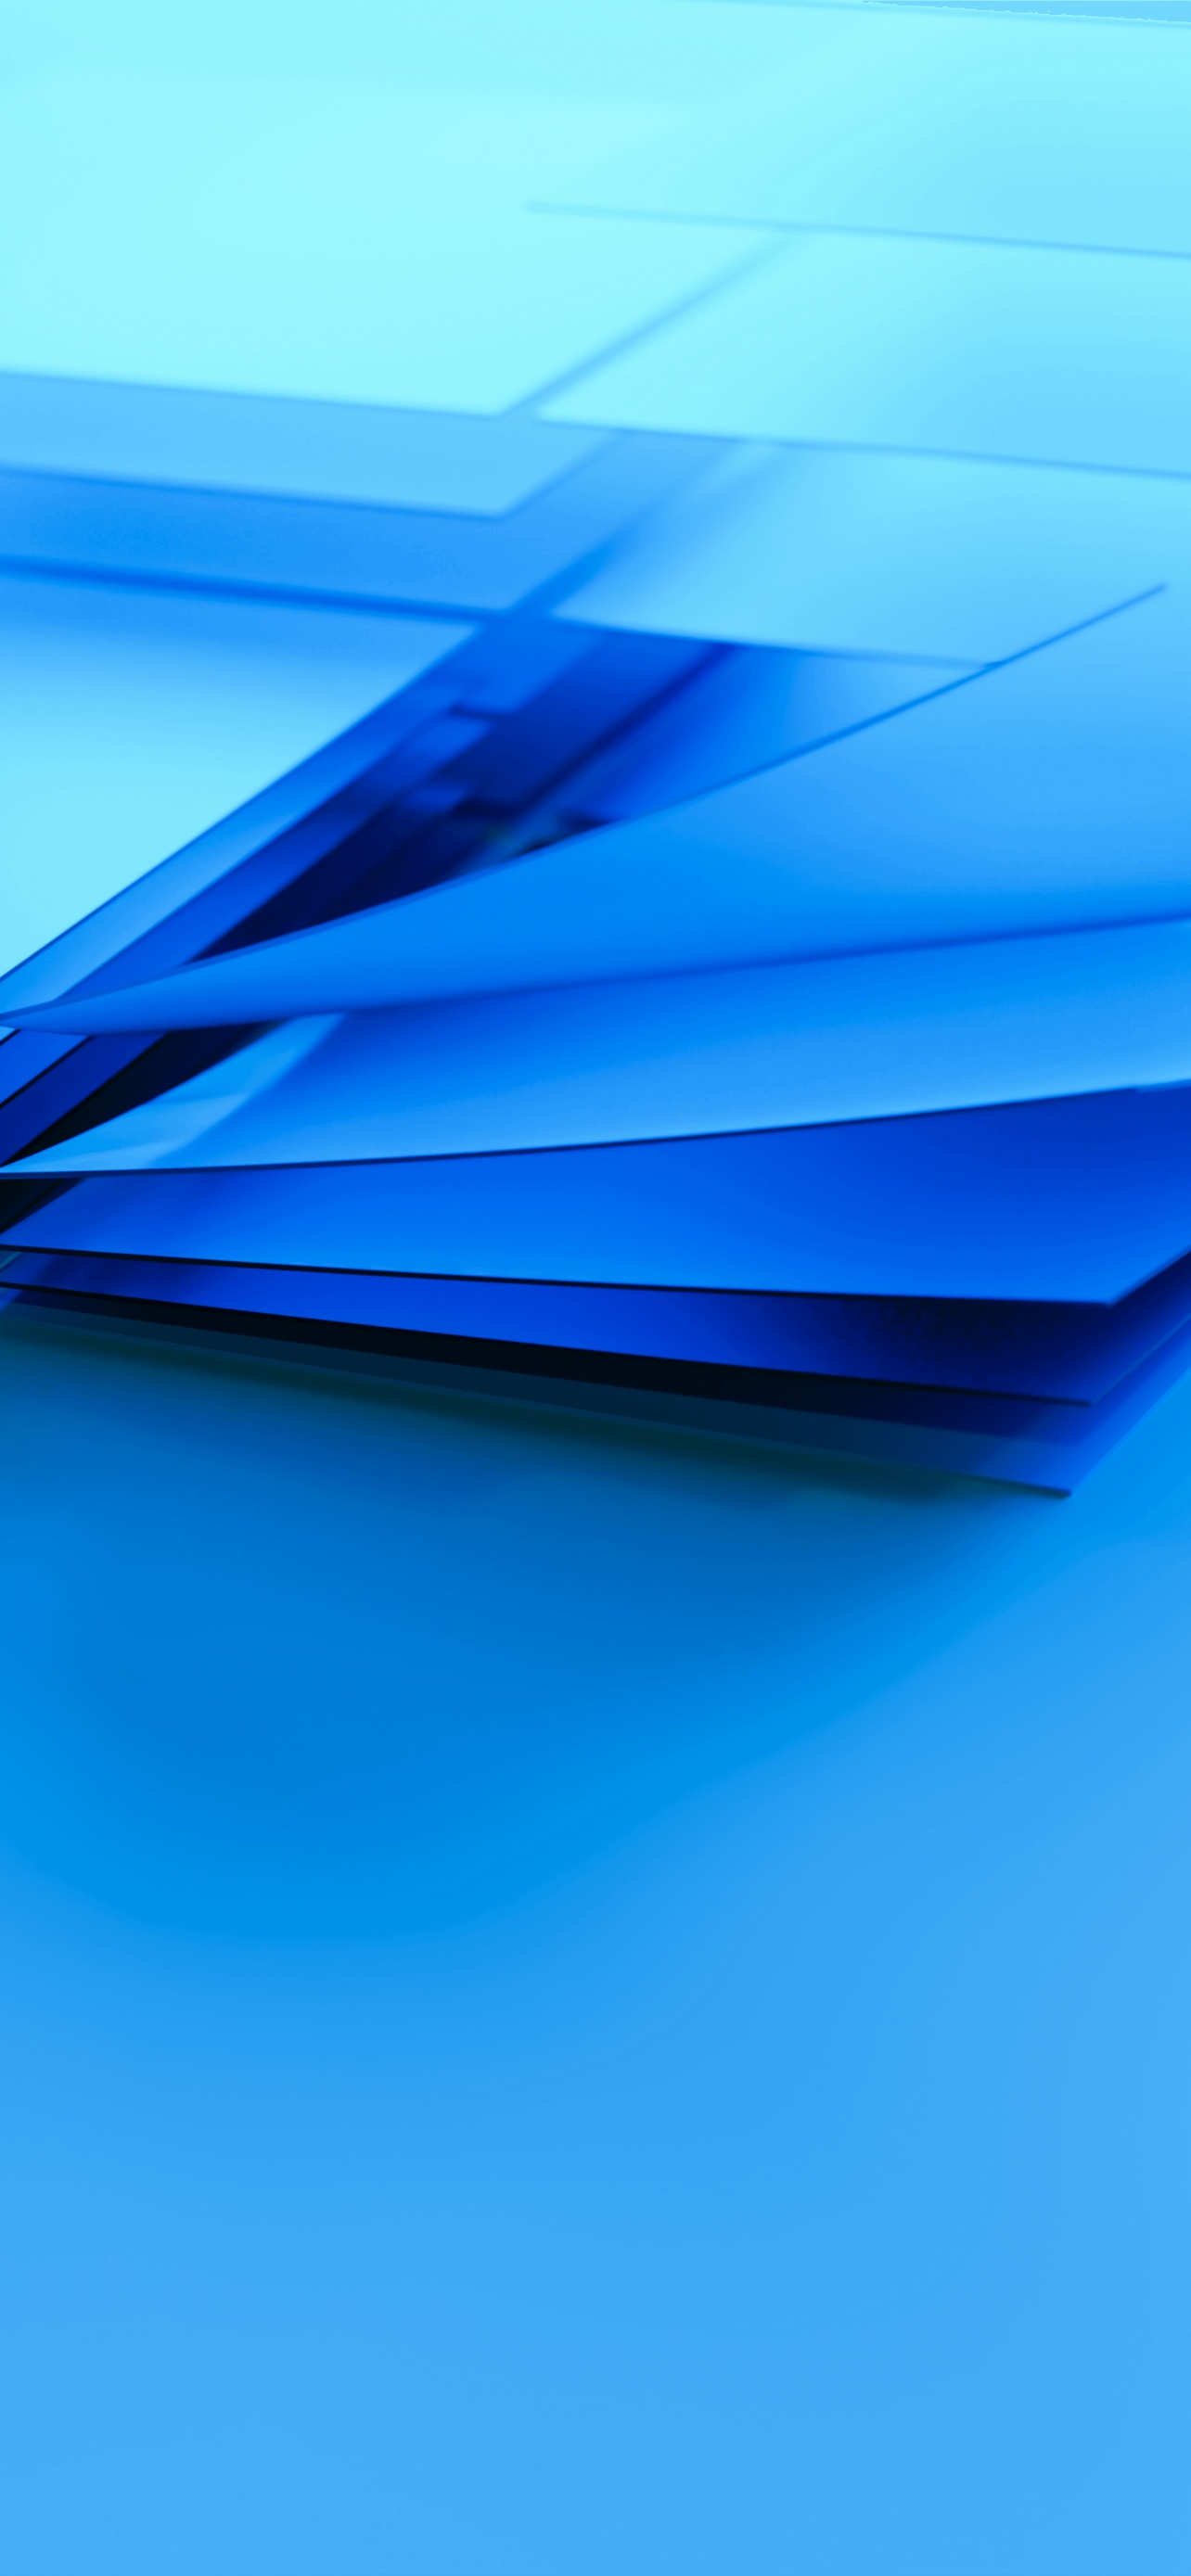 Windows logo Wallpaper: Với bộ sưu tập hình nền Windows logo đầy màu sắc và sinh động, bạn sẽ luôn có một góc nhìn mới mẻ và đầy sáng tạo trên máy tính của mình. Hãy khám phá những bức ảnh độc đáo và tìm kiếm cho mình một hình ảnh phù hợp nhé.